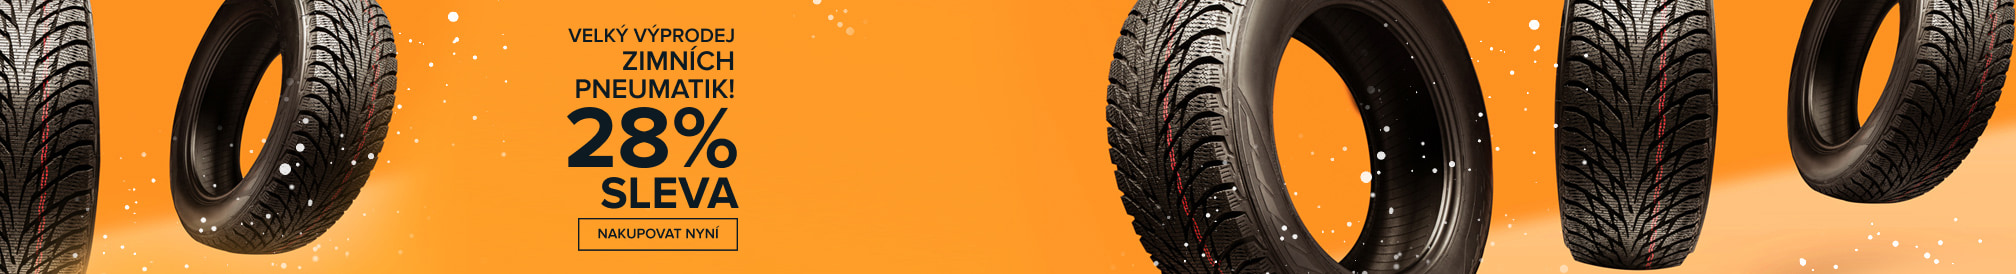 Velký výprodej zimních pneumatik! 28% SLEVA - Nakupovat nyní!